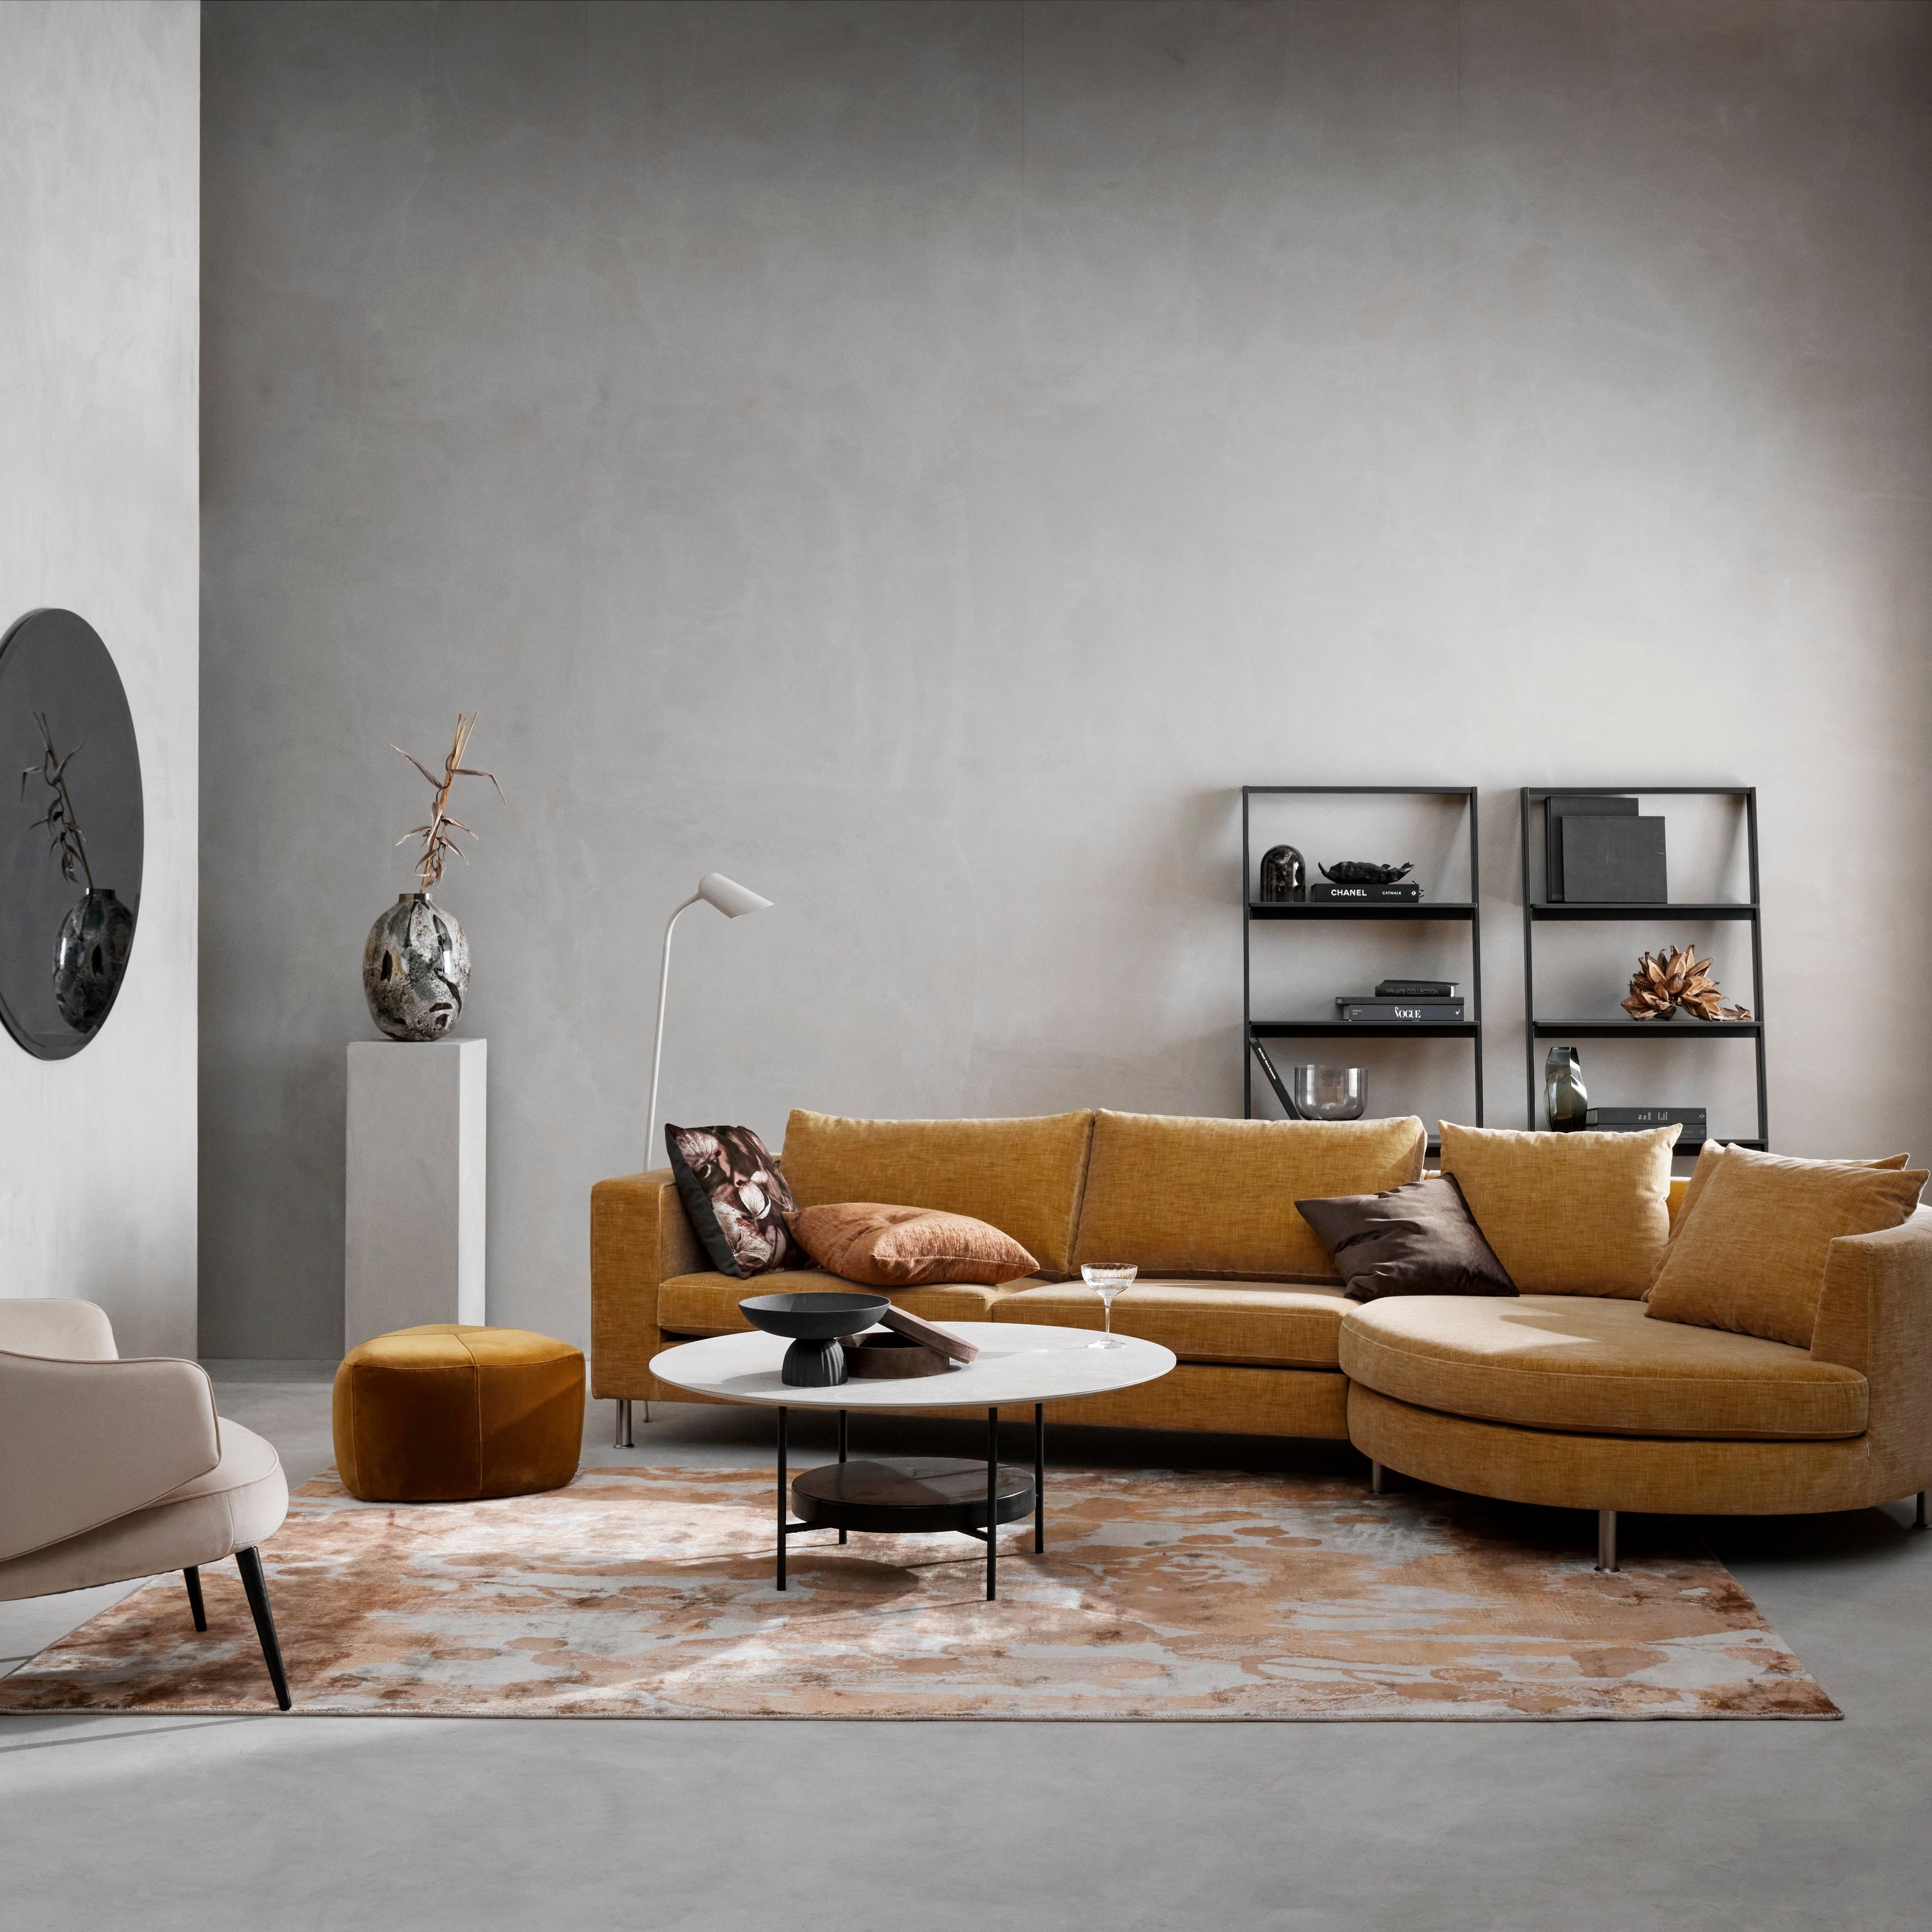 Moderná obývačka so sedacou súpravou v horčicovej farbe, béžovou stoličkou, vzorovaným kobercom a minimalistickými ozdobami.